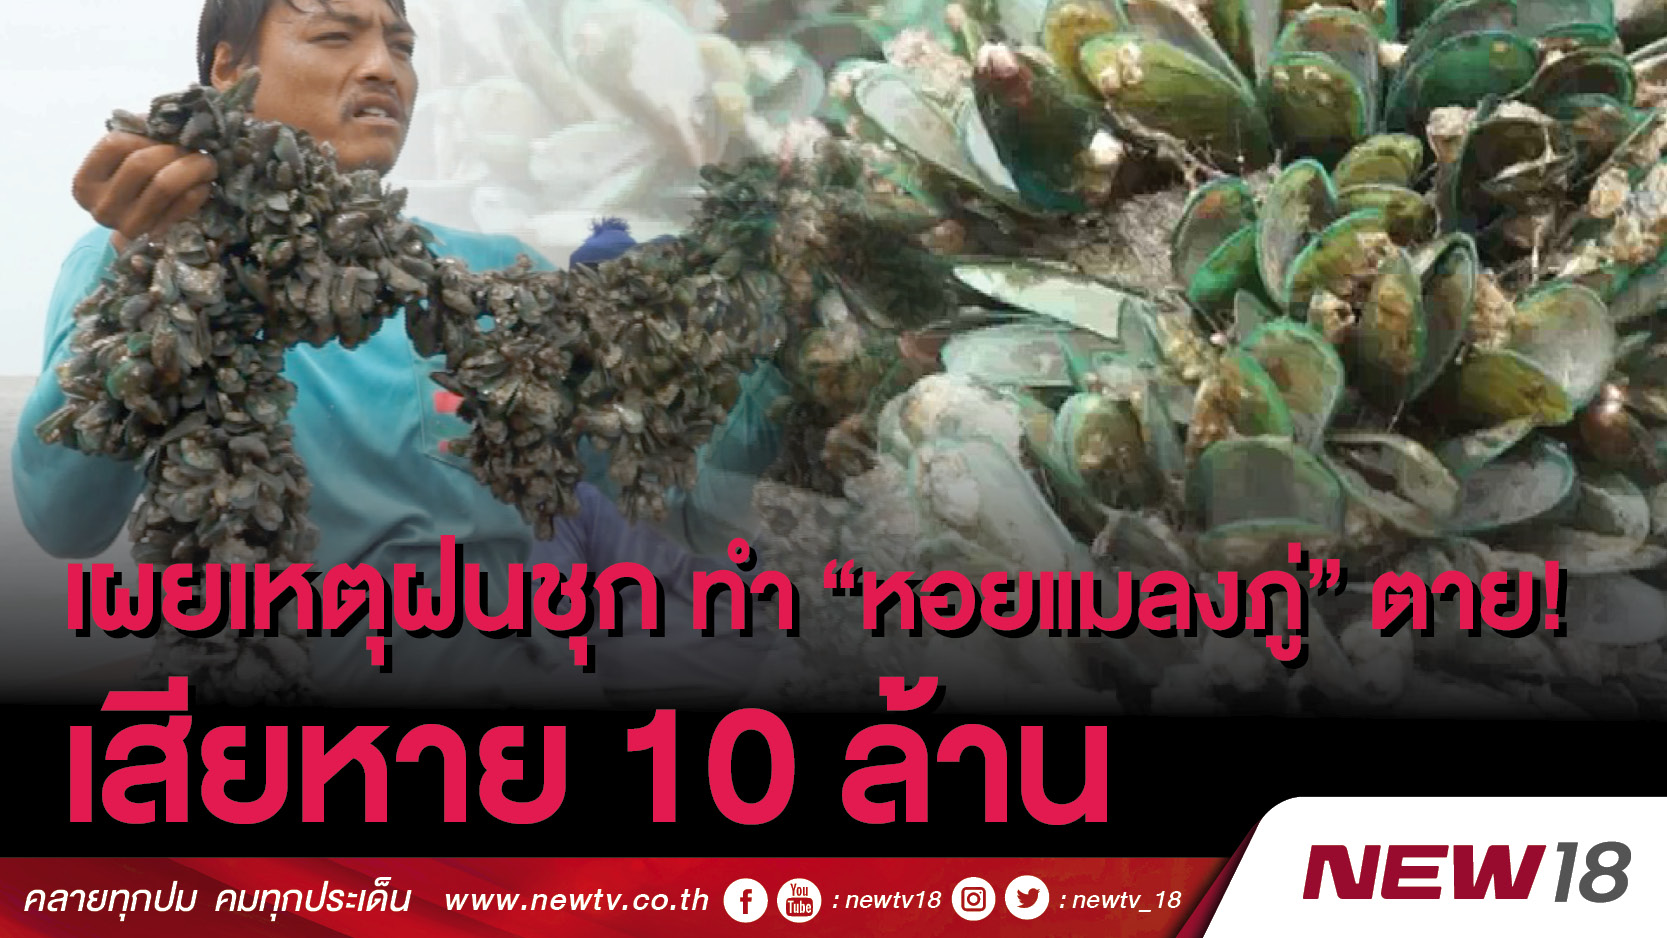 เผยเหตุฝนชุก ทำ “หอยแมลงภู่” ตาย ! เสียหาย 10 ล้าน